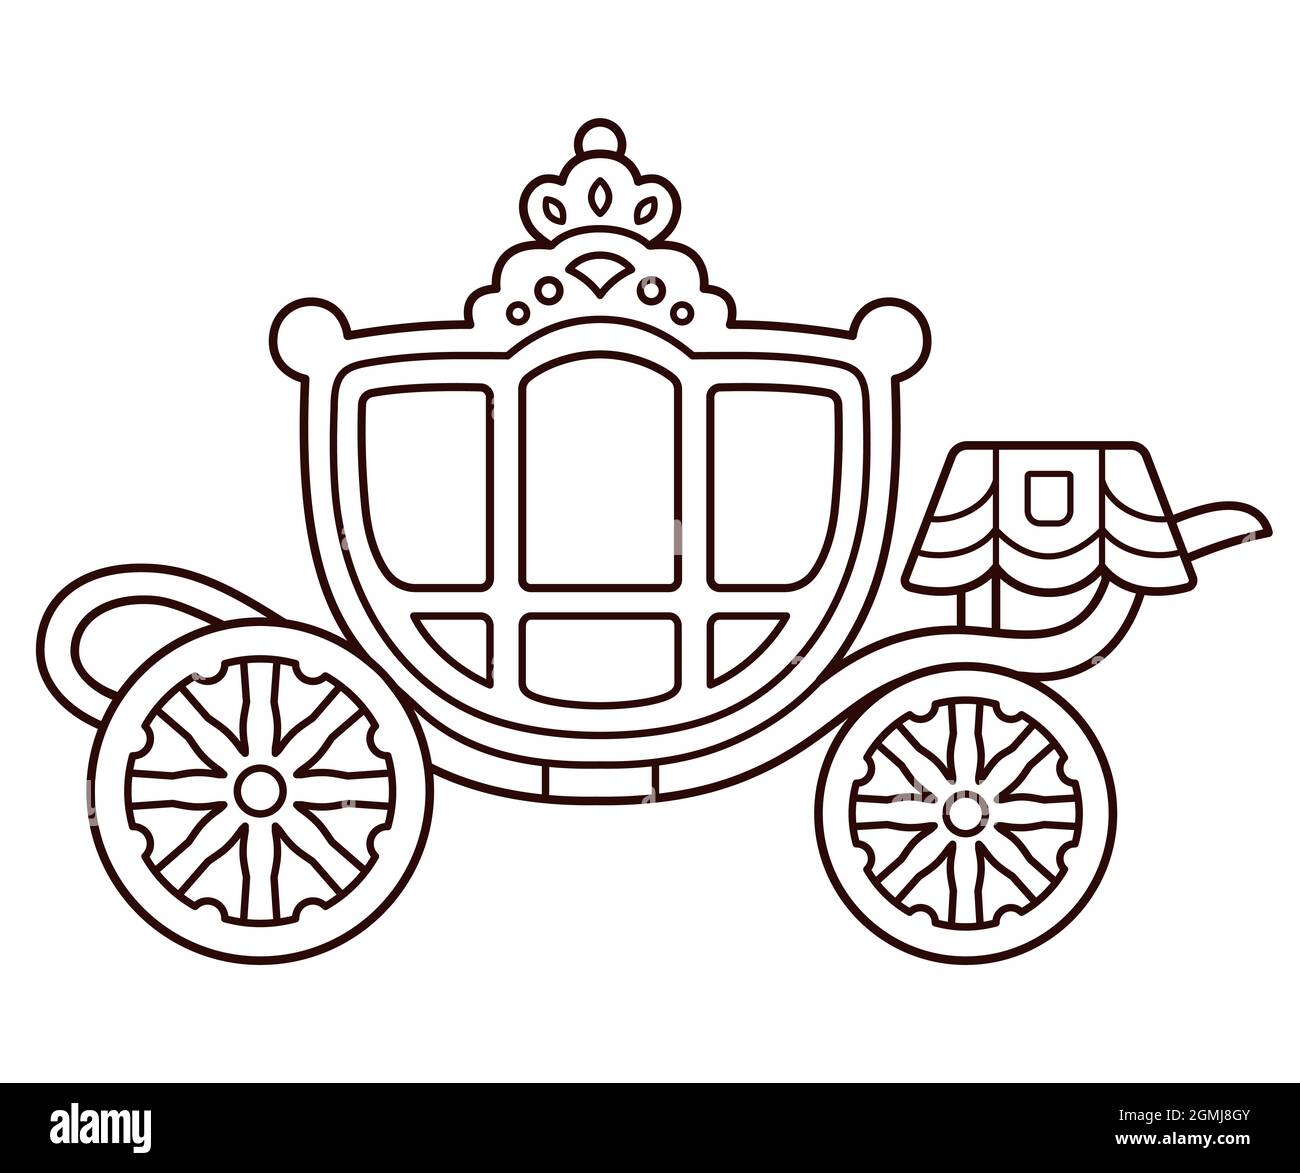 Gouden Koets (Golden Coach) carrozza di famiglia reale olandese. Disegno carino di cartoni animati, disegno di linee bianche e nere per la colorazione. Illustrazione grafica della clip vettoriale. Illustrazione Vettoriale